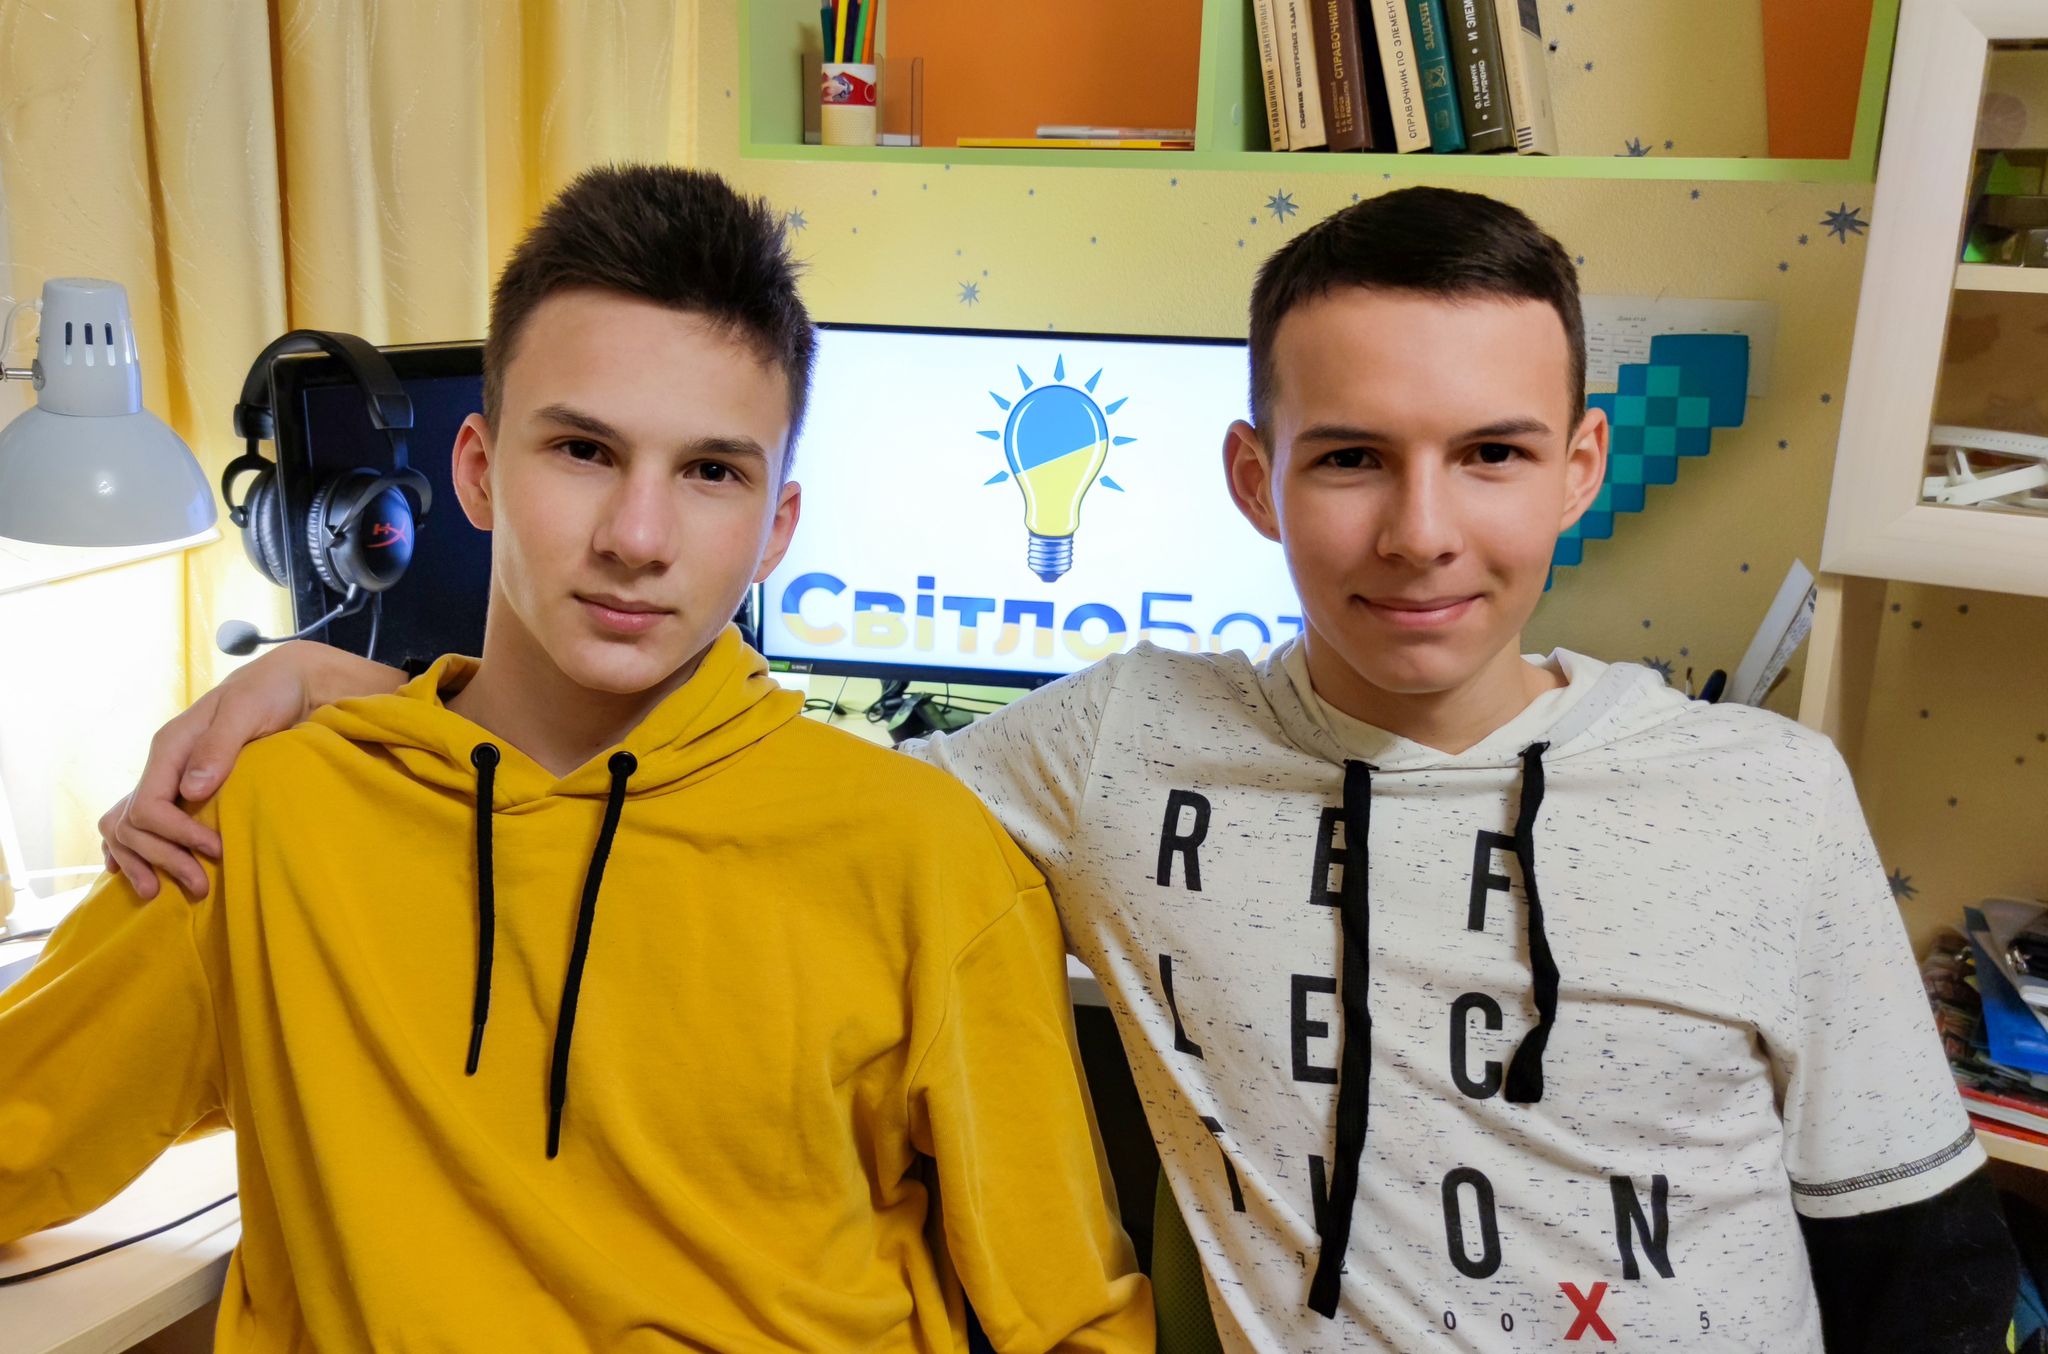 Артем (слева) и Дмитрий Чигарев монетизировать проект не планируют. Фото: Личный архив Чигаревых